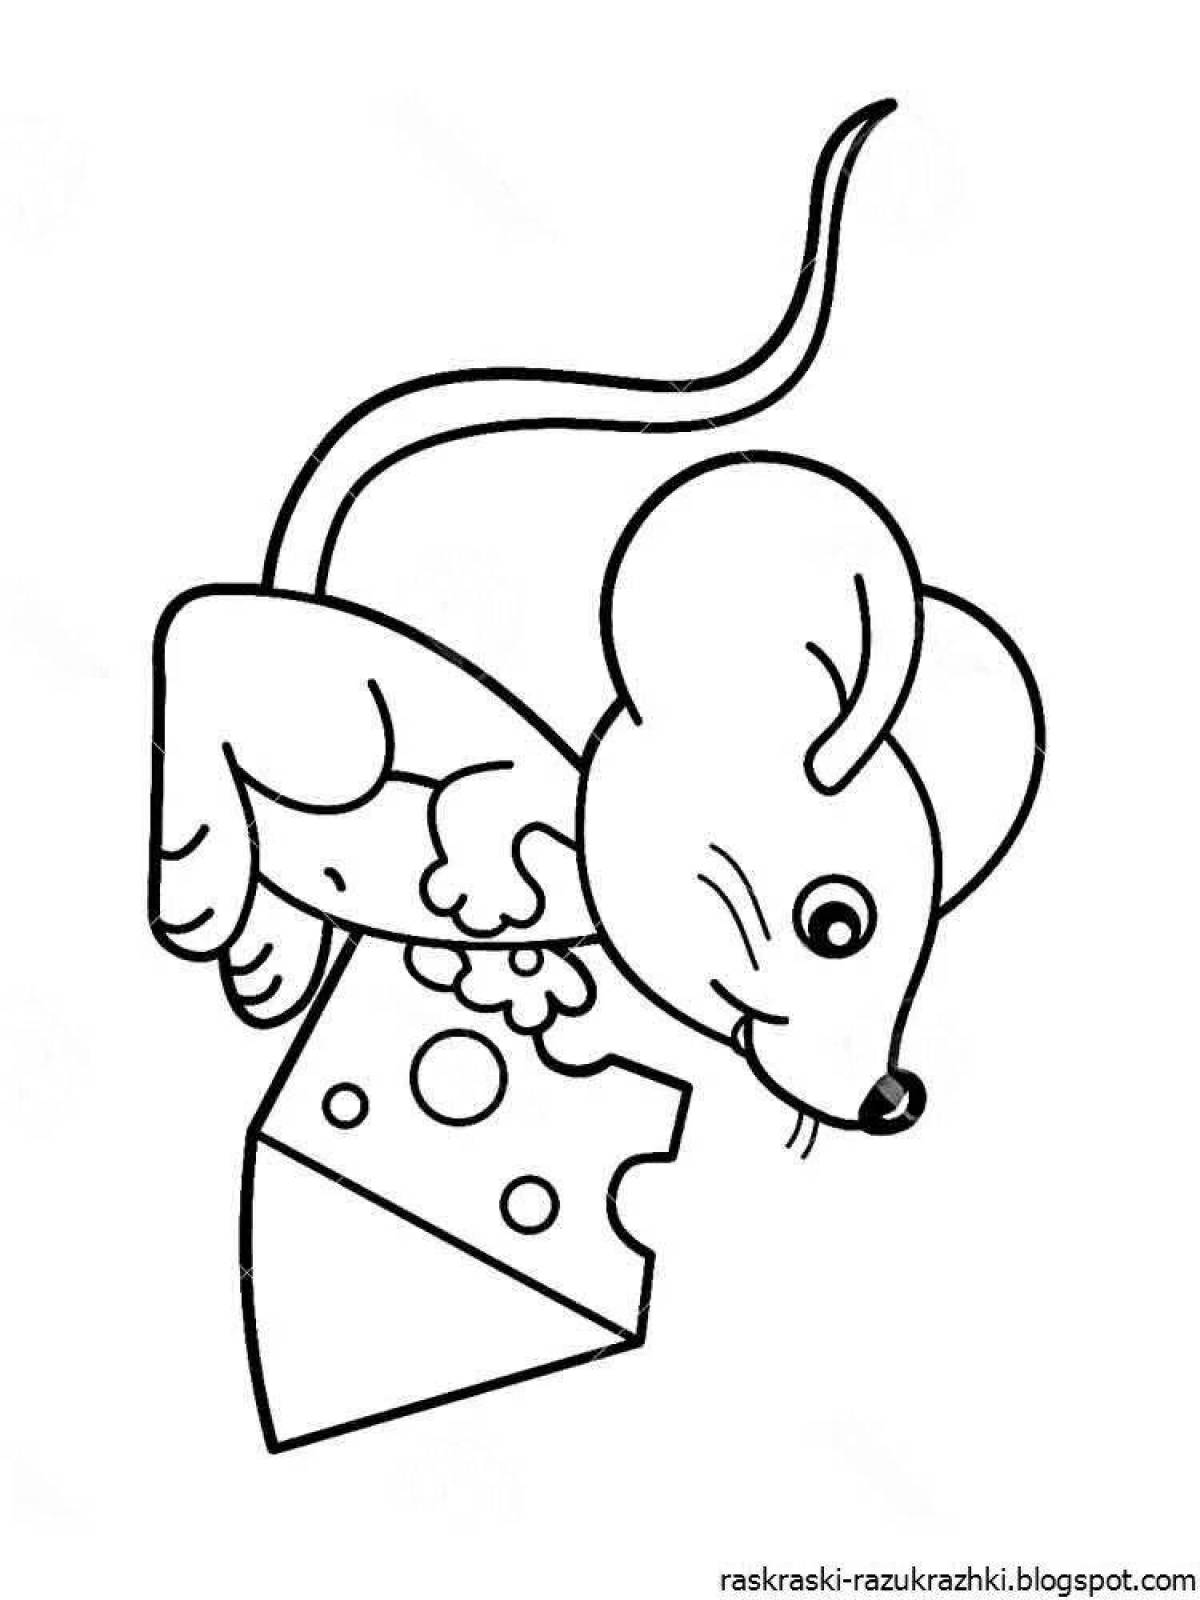 Мышь рисунок для детей раскраска